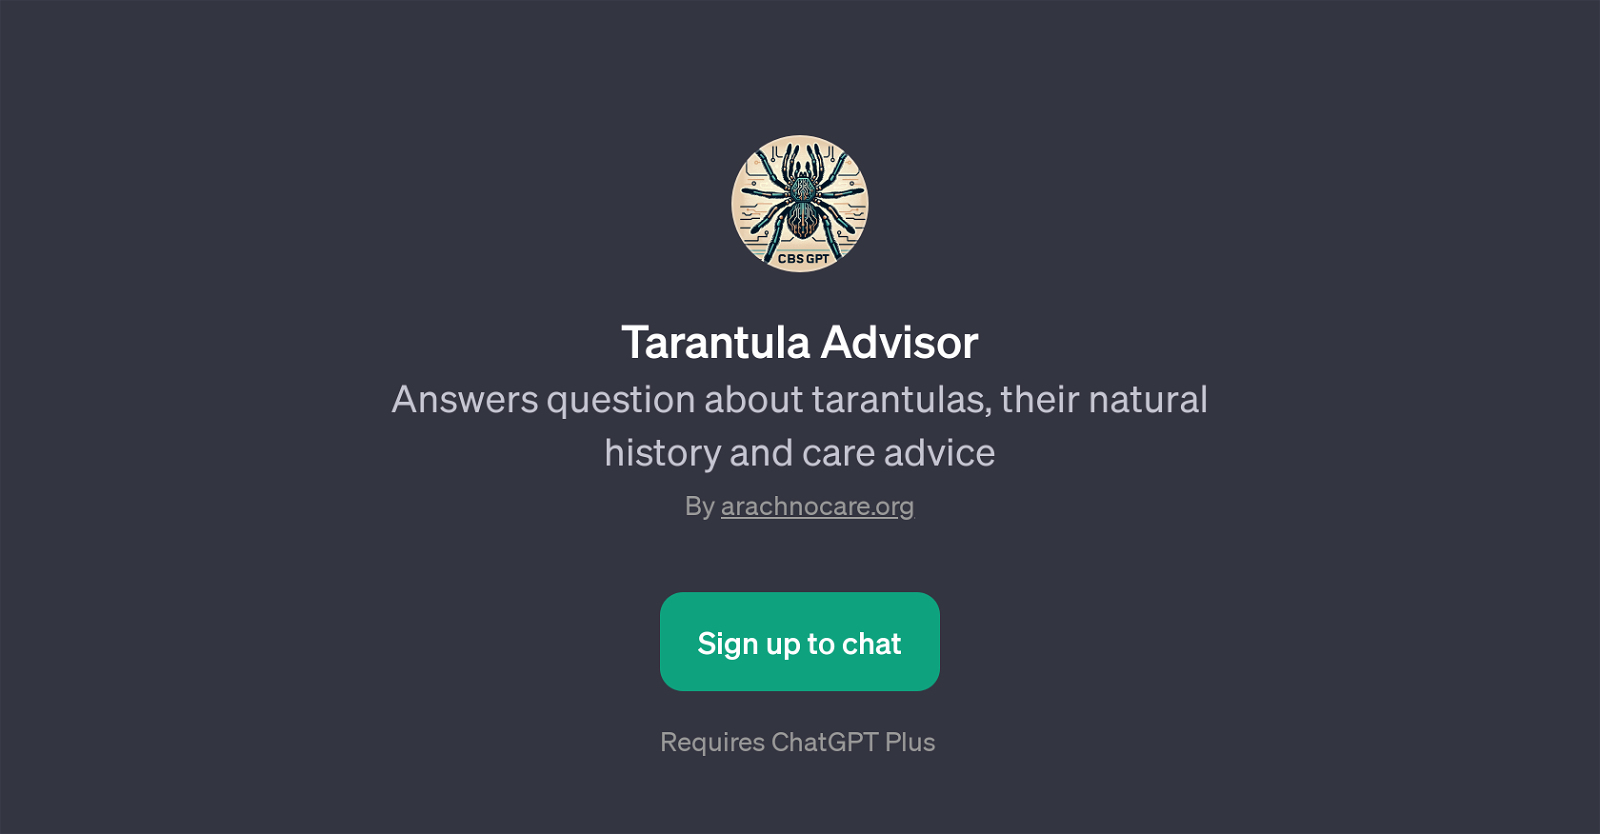 Tarantula Advisor website